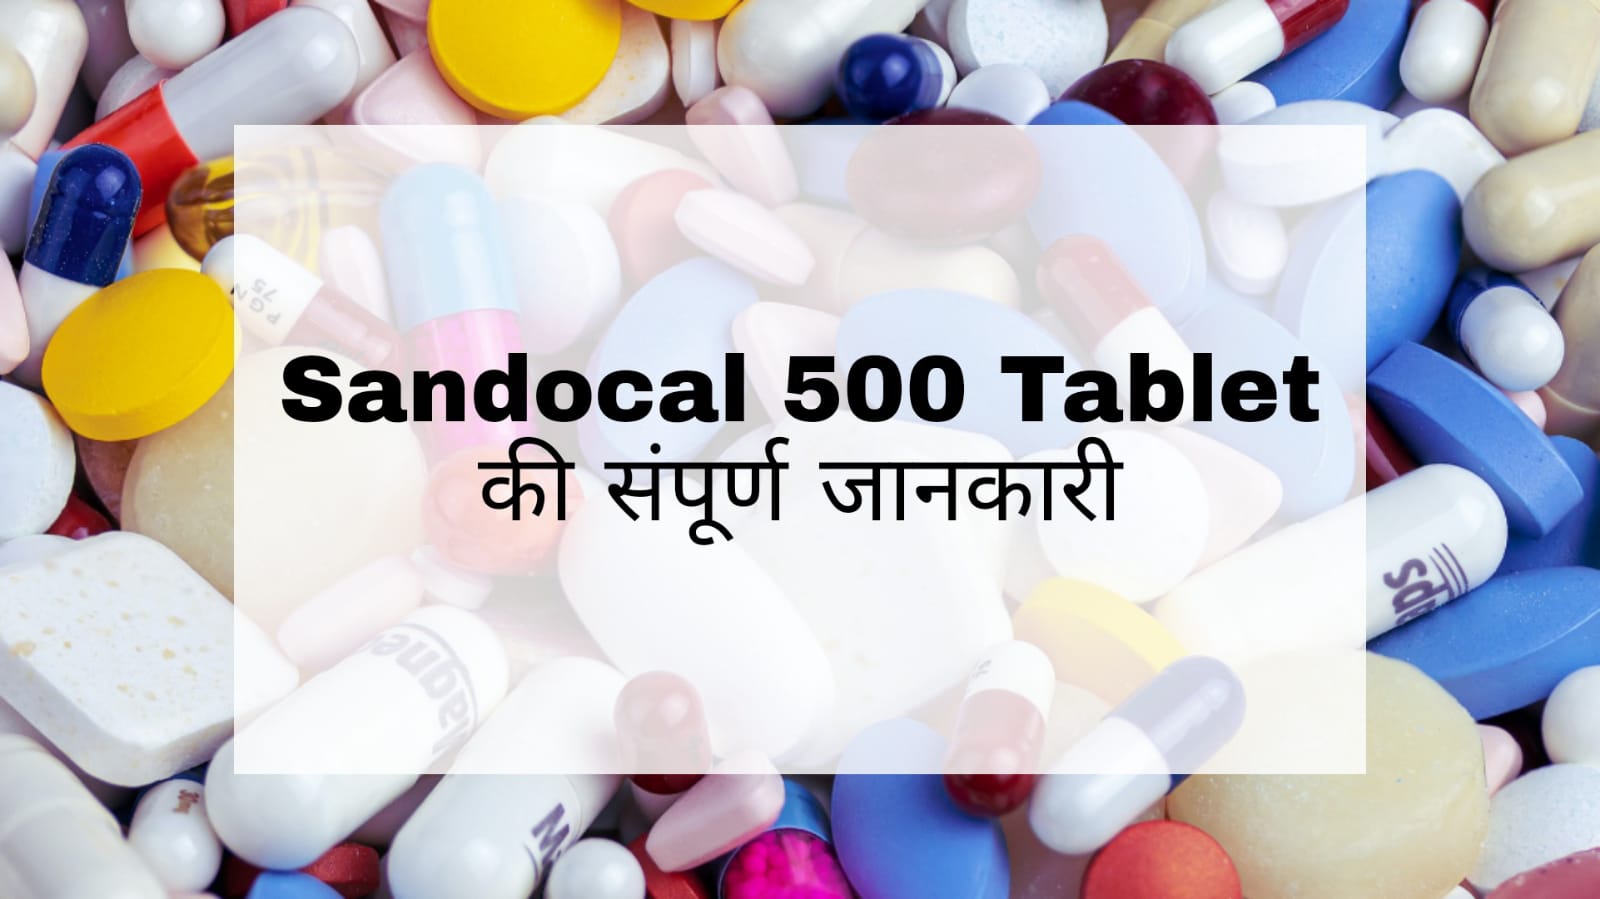 Sandocal 500 Tablet